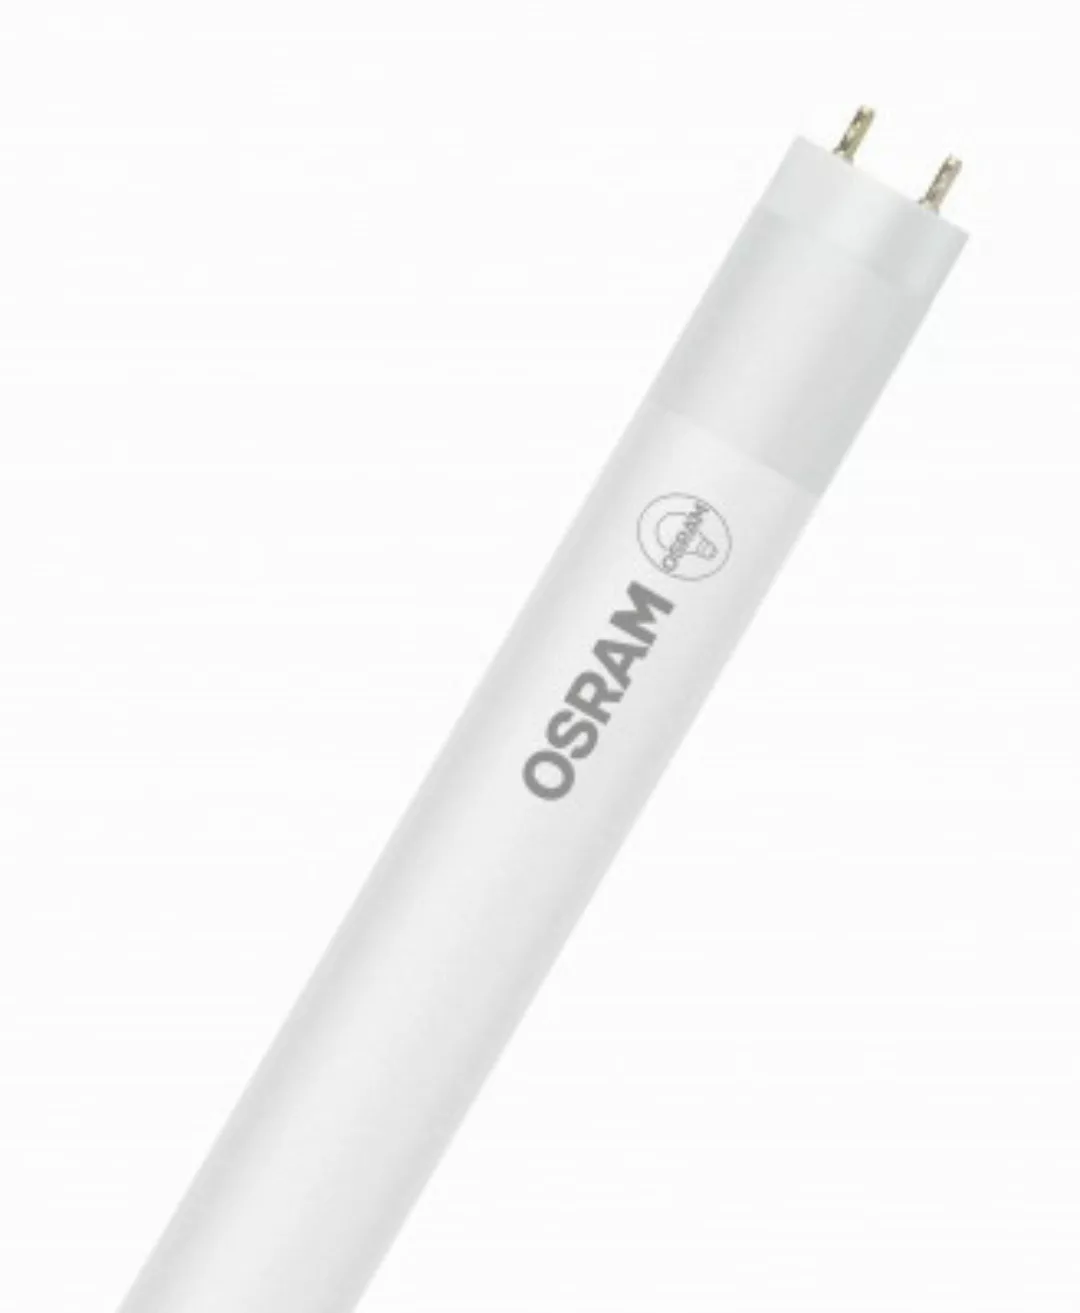 OSRAM LED RÖHRE SUBSTITUBE T8 STAR+ ST8SP-1.2M-840 EM BOX K Kaltweiß Matt G günstig online kaufen